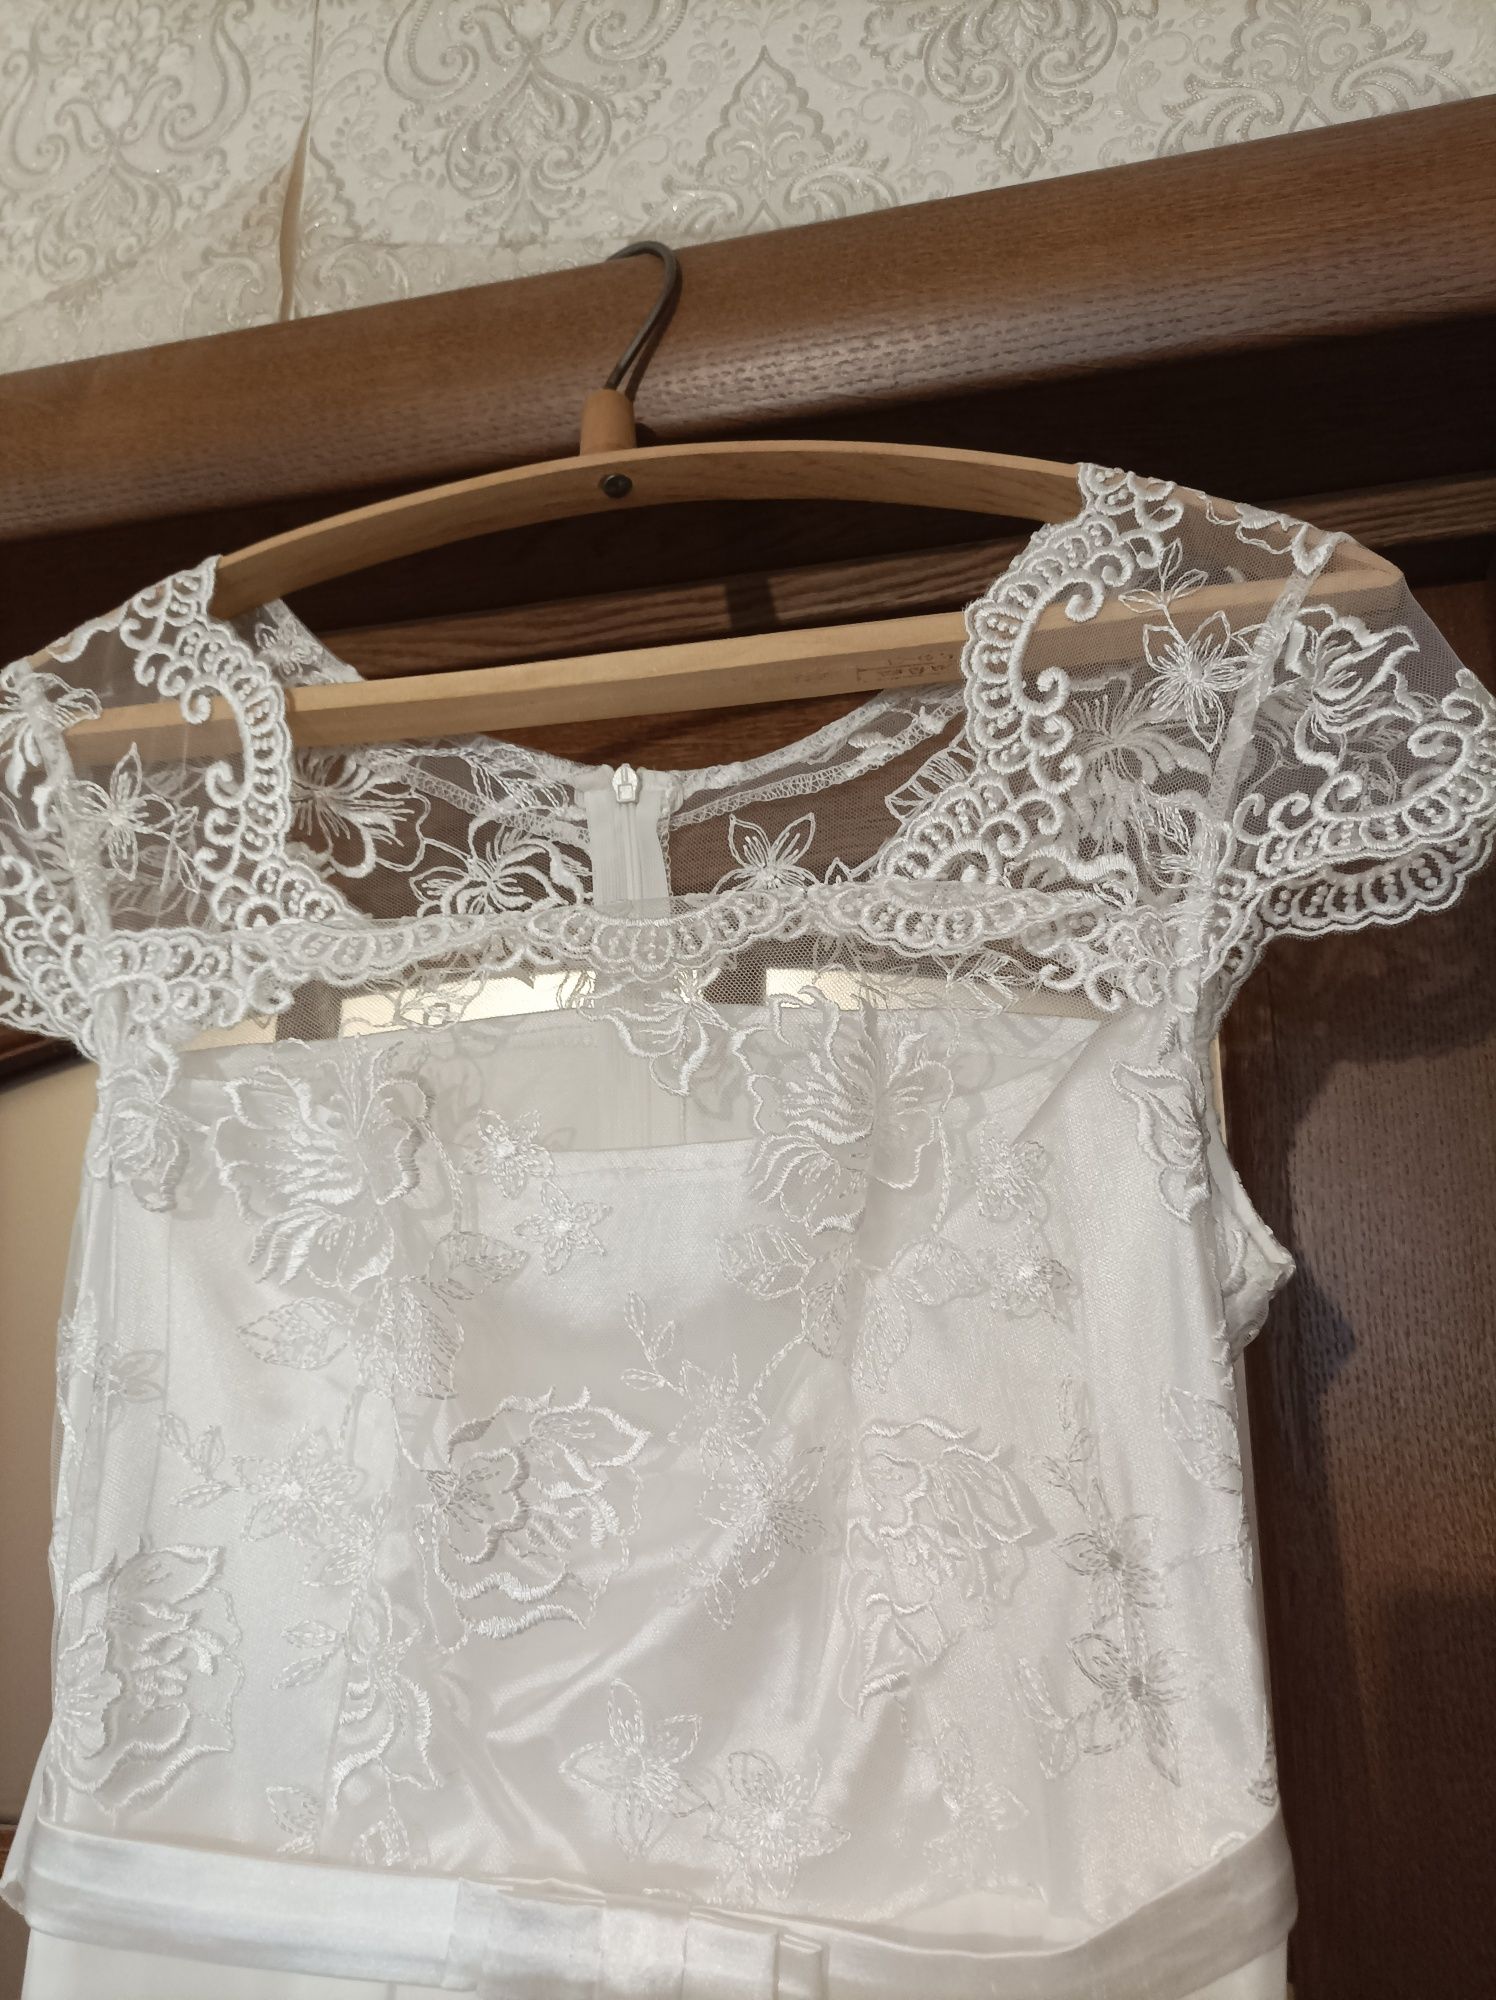 Платье белое новое на выпуск или свадьбу